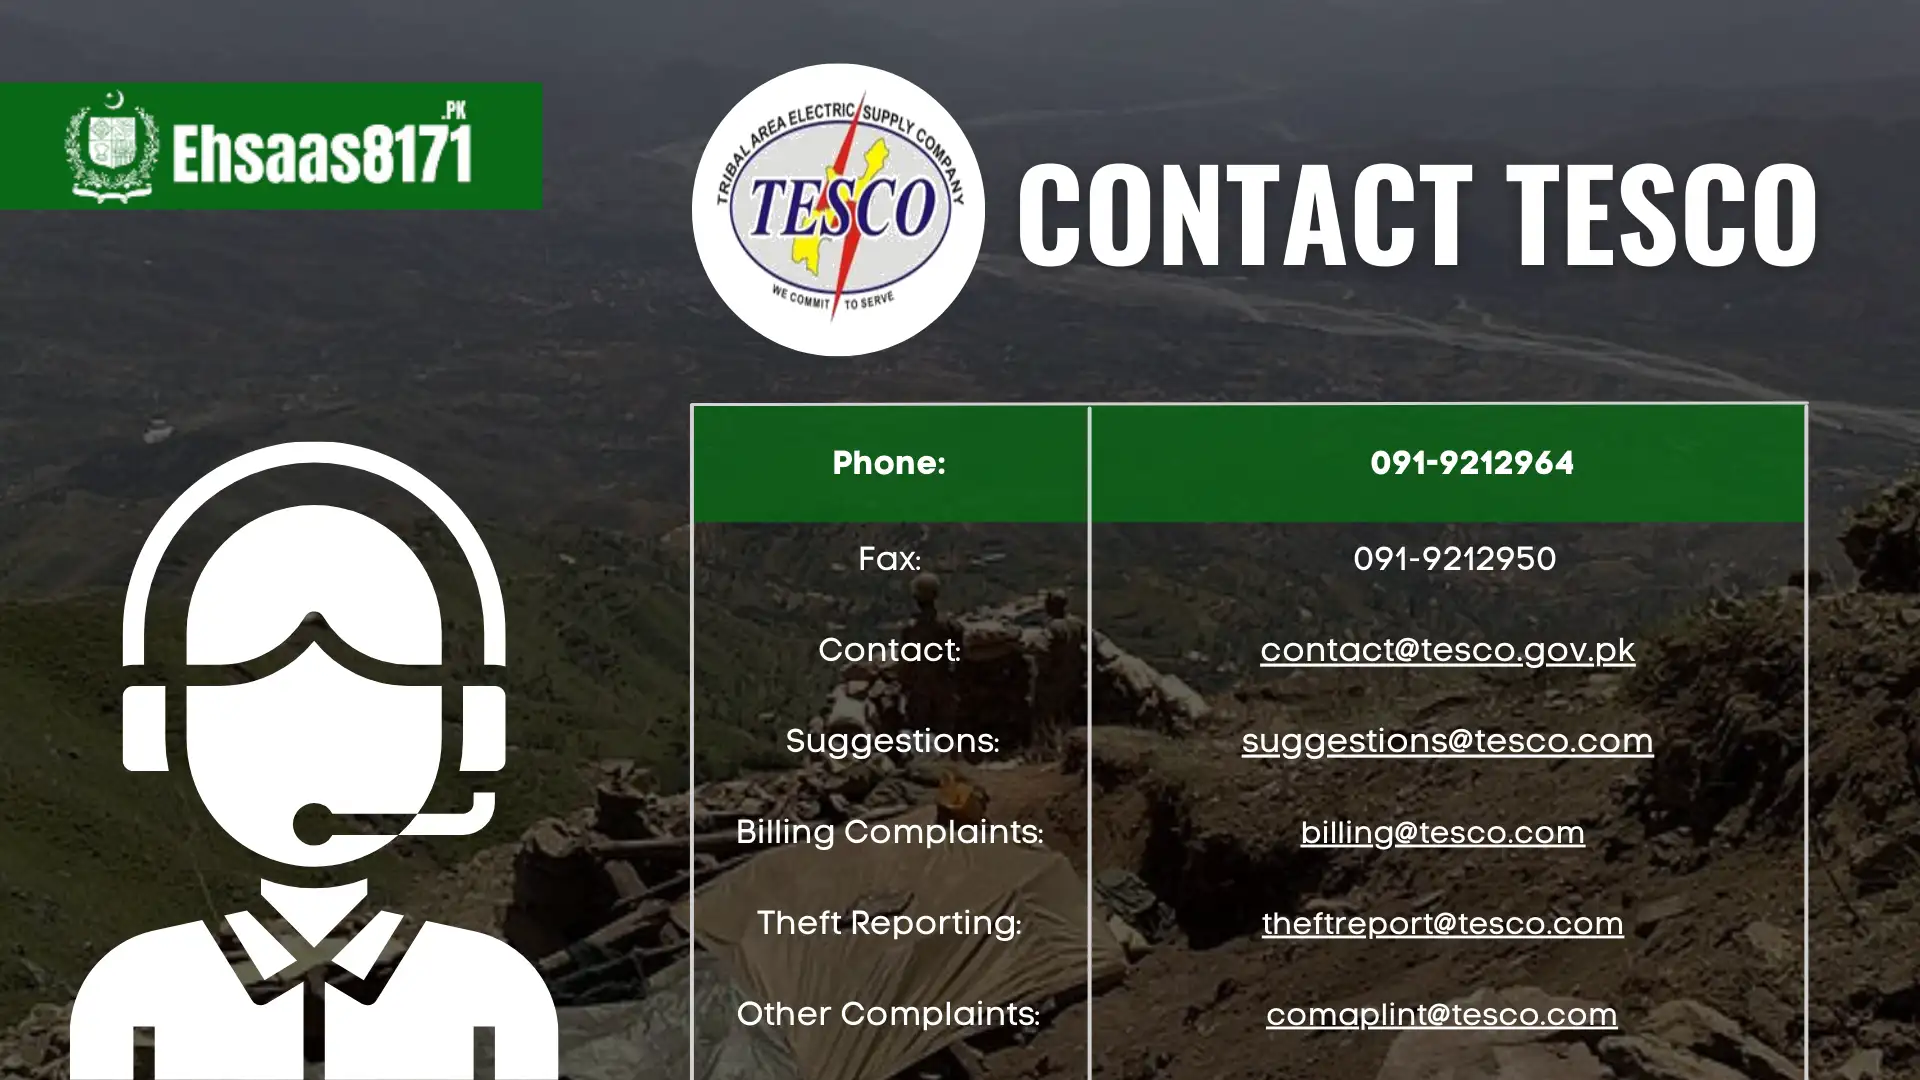 Contact TESCO